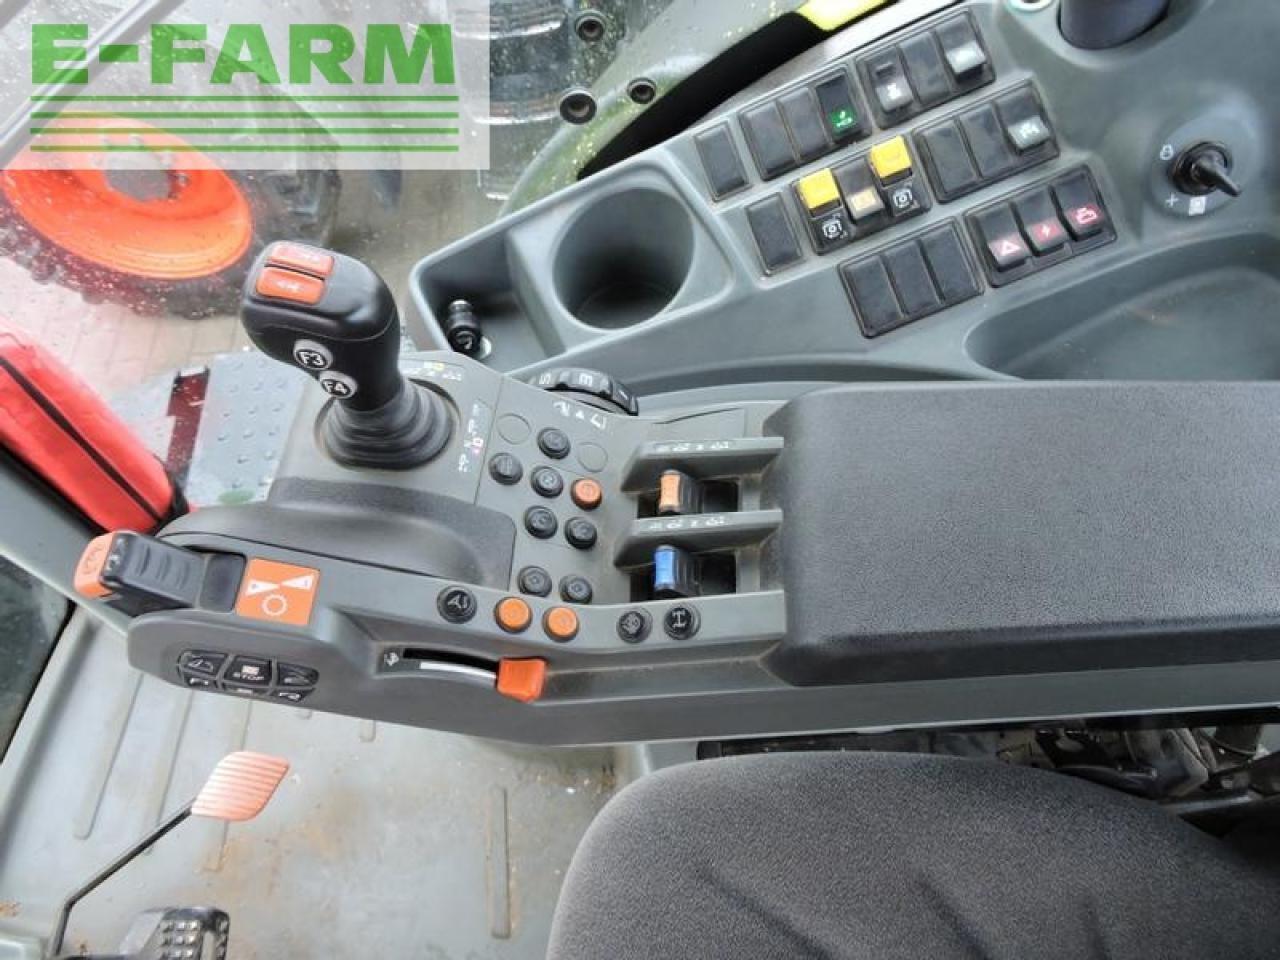 Farm tractor CLAAS axion 810 cmatic cis